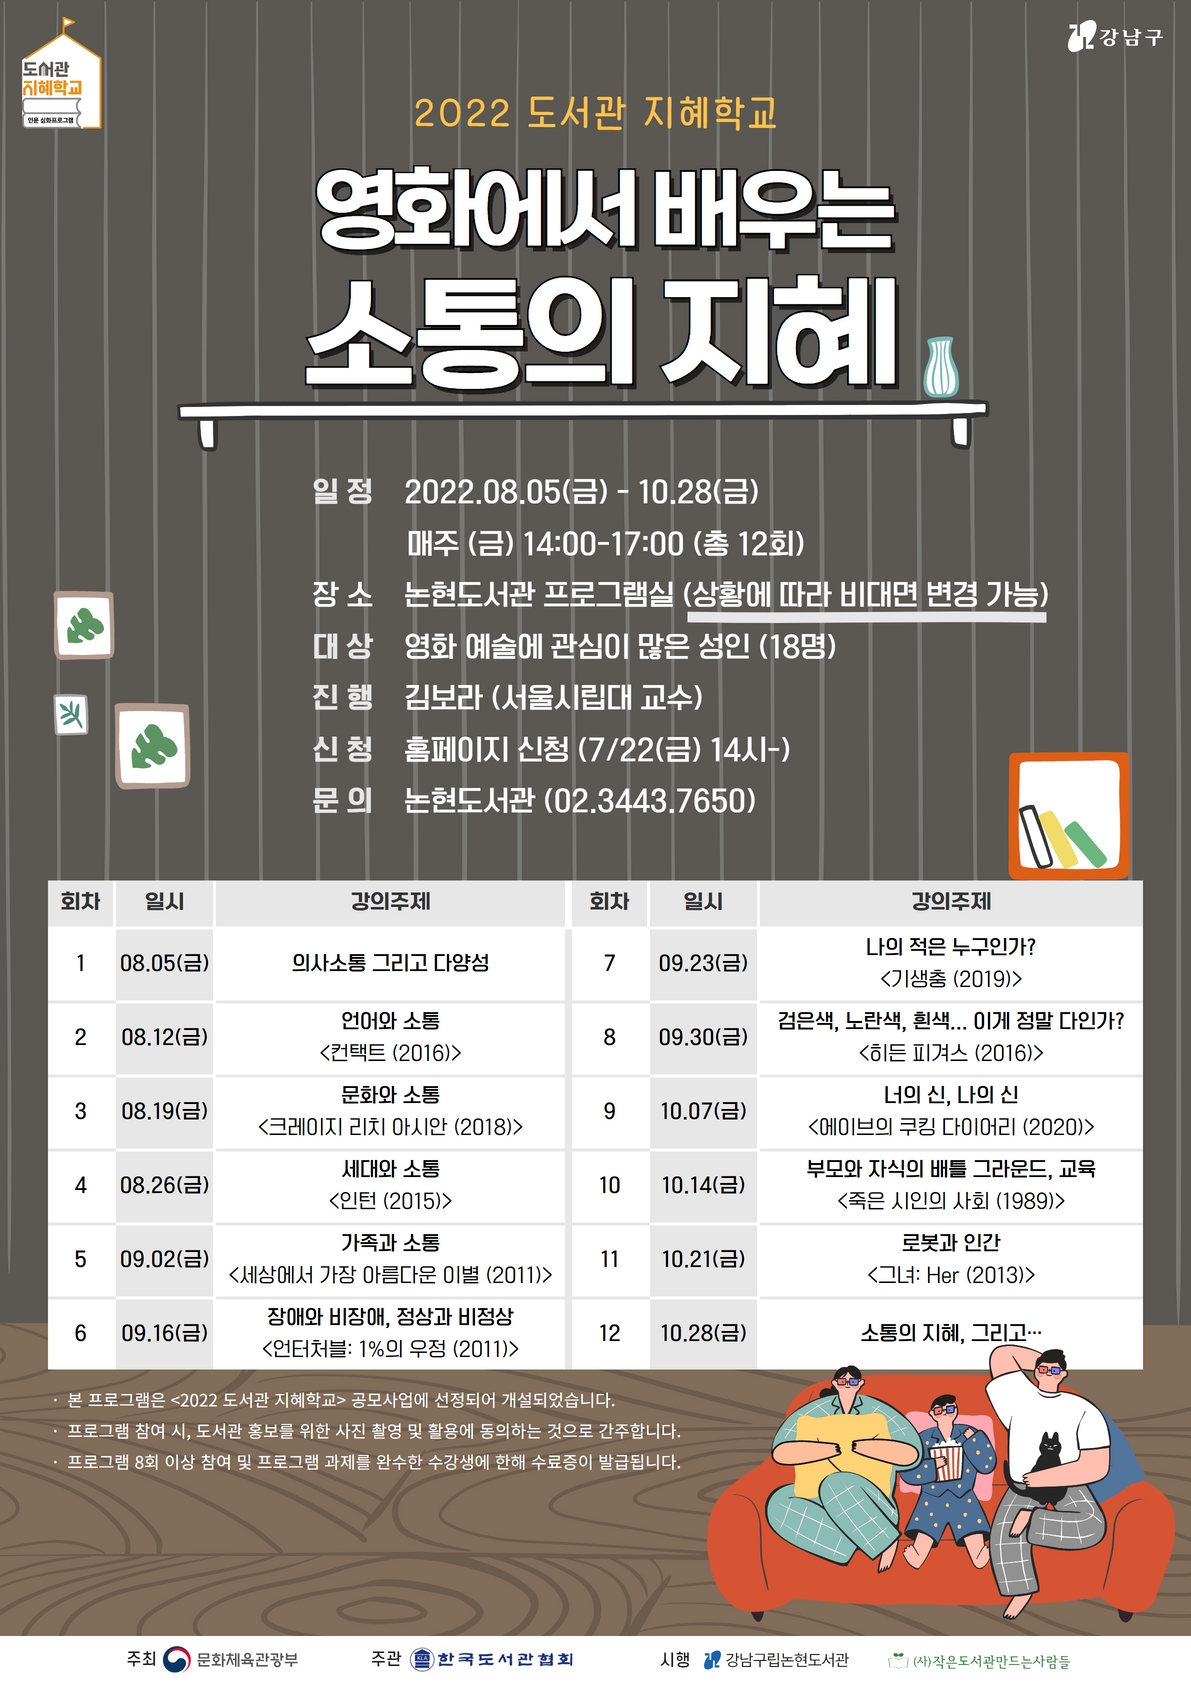 강남구립논현도서관, 2022년 도서관 지혜학교 포스터 